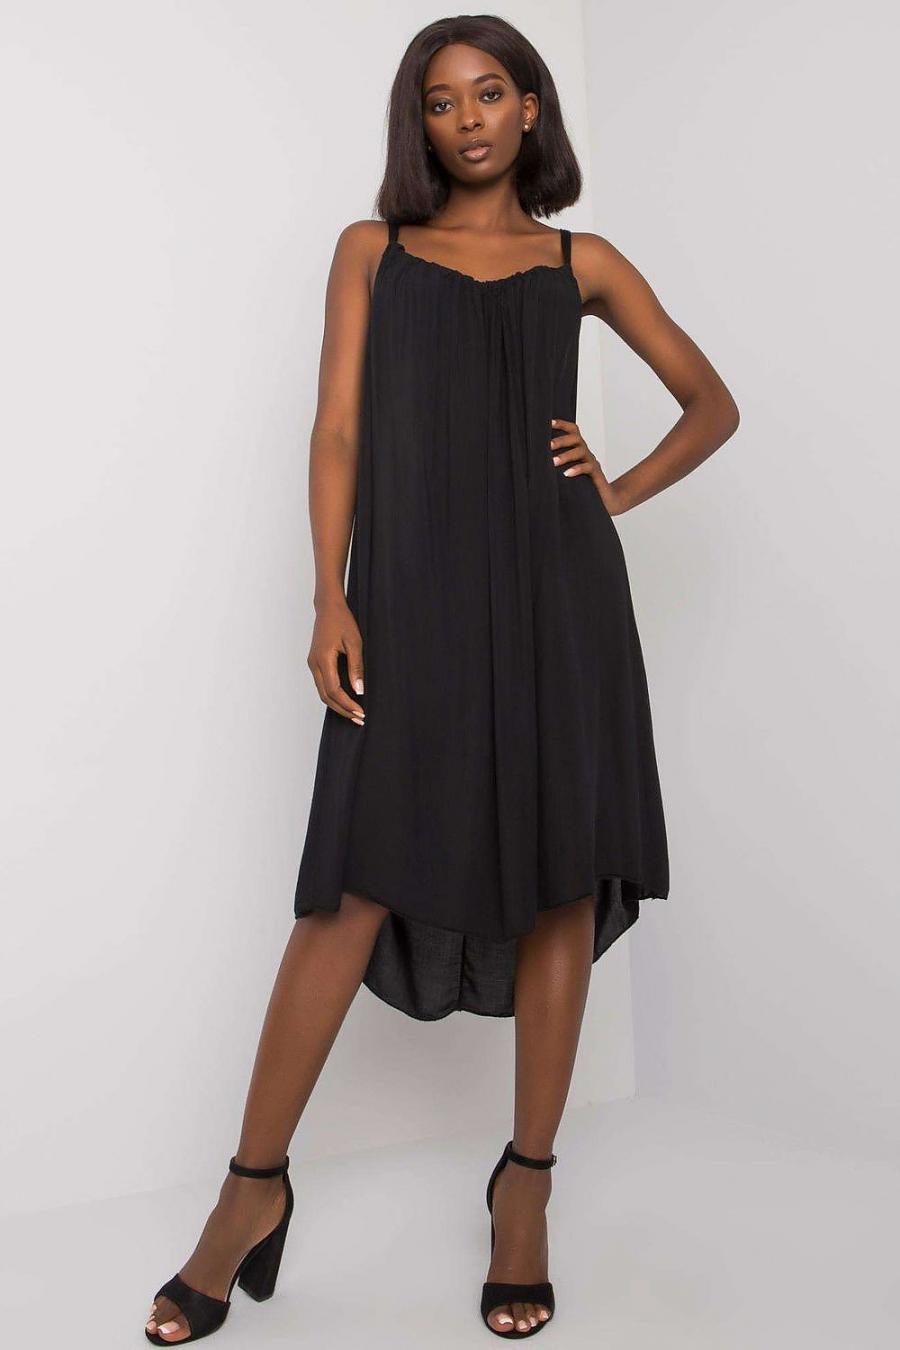 Ostatní značky šaty dámské 165030 - černá - velikost S